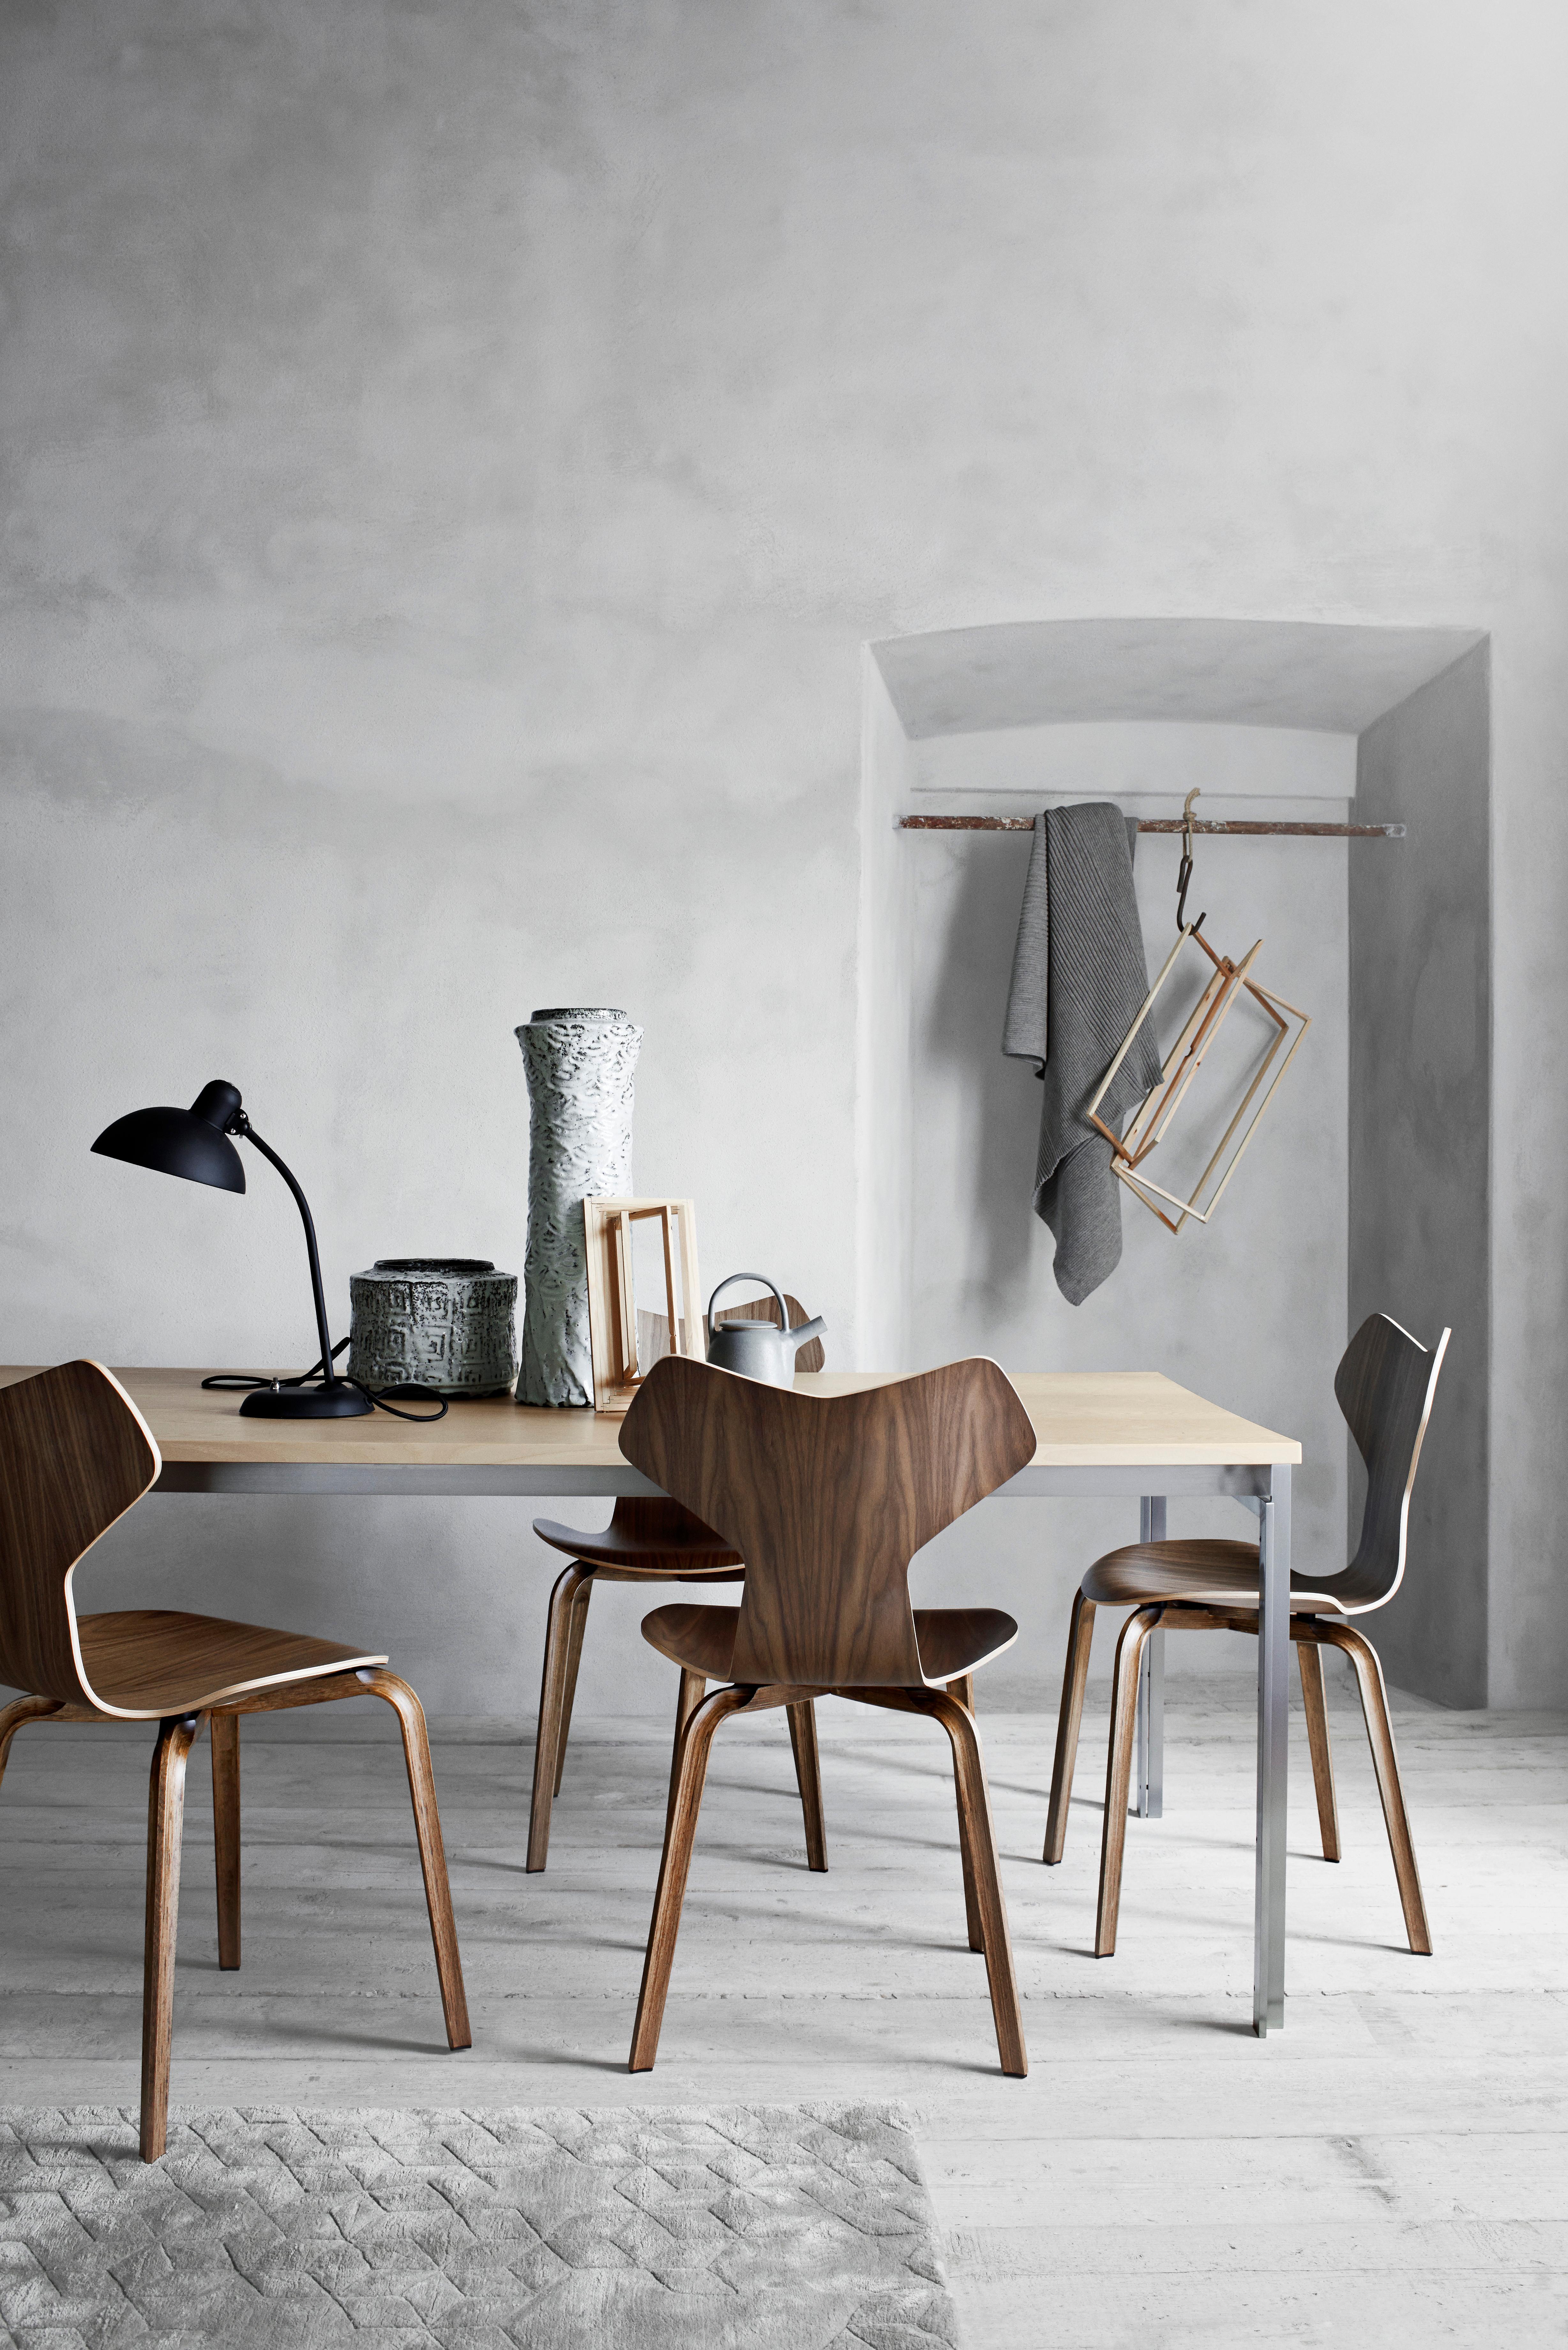 Poul Kjærholm 'PK55' Tisch oder Pult für Fritz Hansen.

Fritz Hansen wurde 1872 gegründet und ist zum Synonym für legendäres dänisches Design geworden. Die Marke kombiniert zeitlose Handwerkskunst mit einem Schwerpunkt auf Nachhaltigkeit. Die